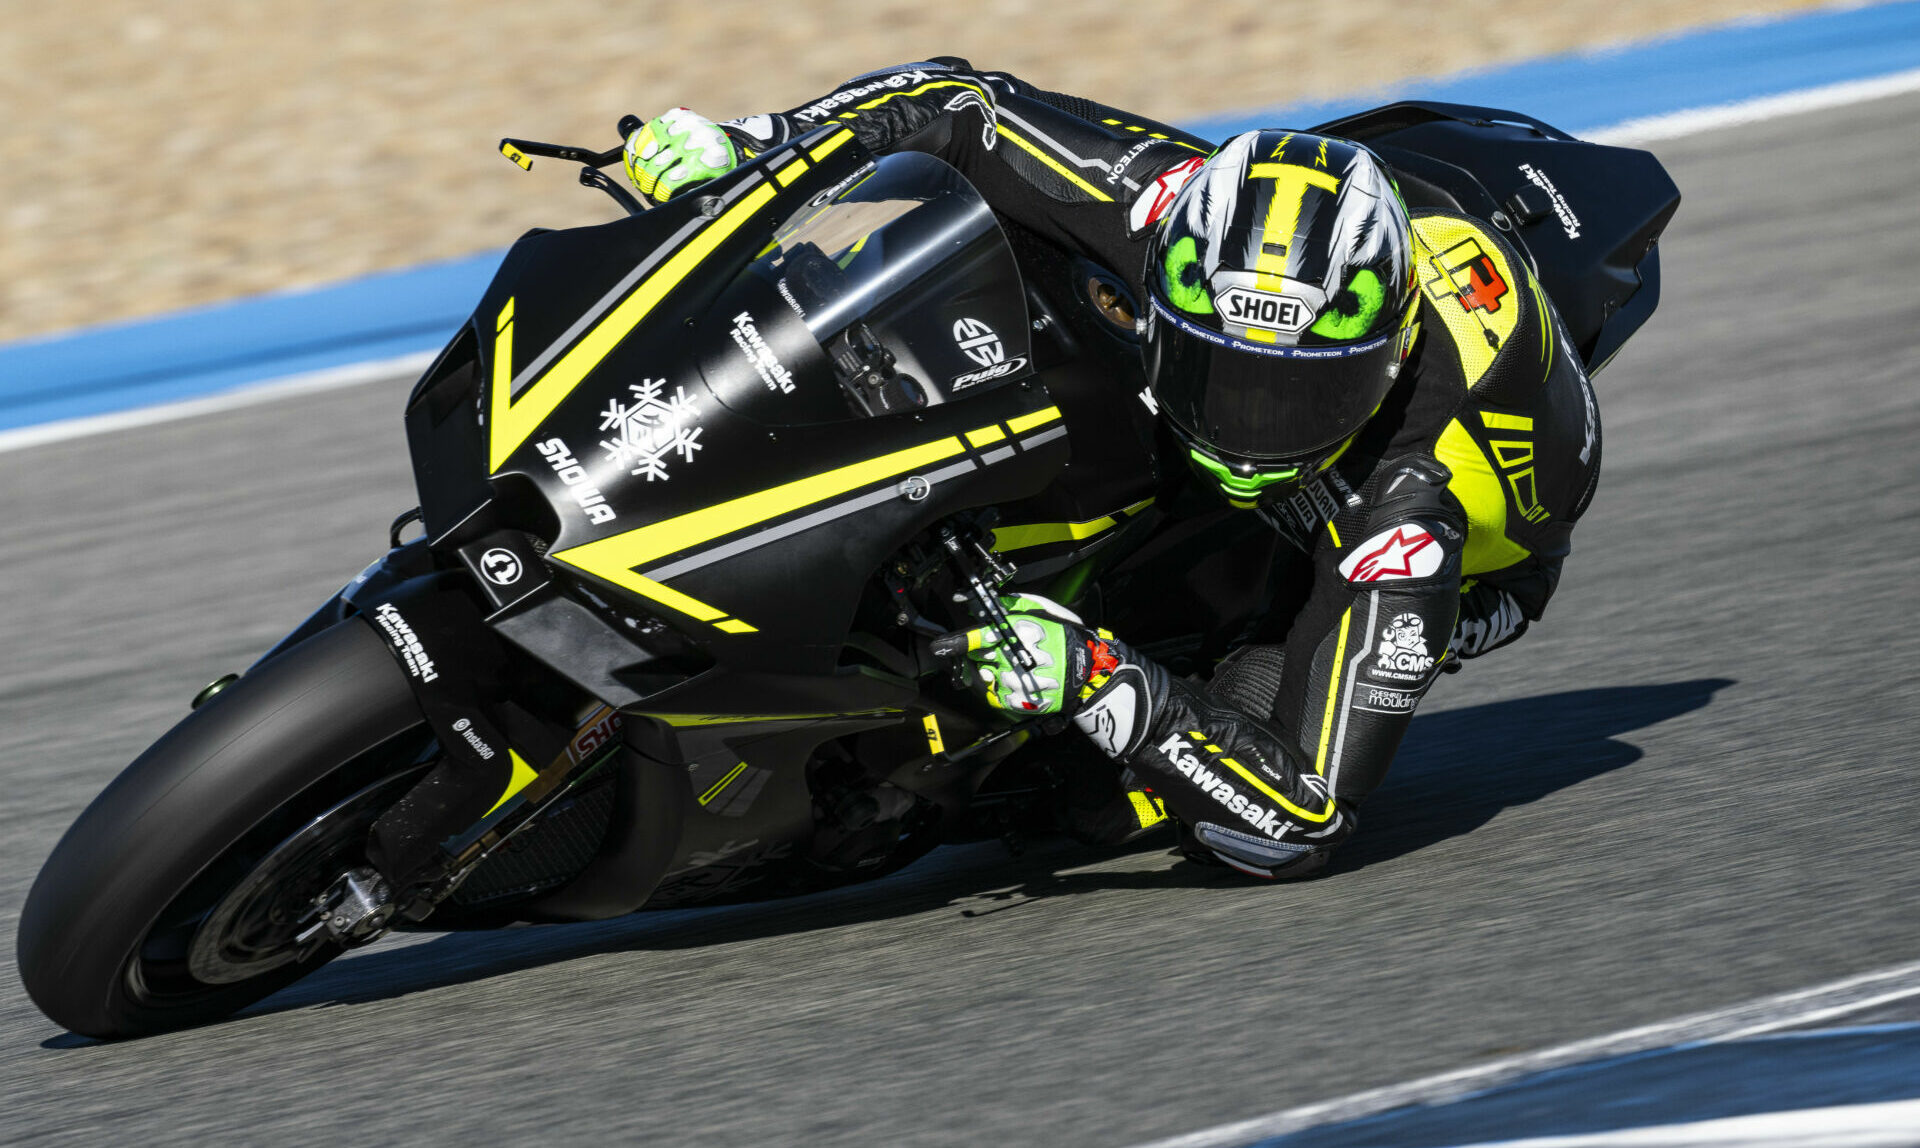 Axel Bassani in action at Jerez. Photo courtesy Kawasaki.